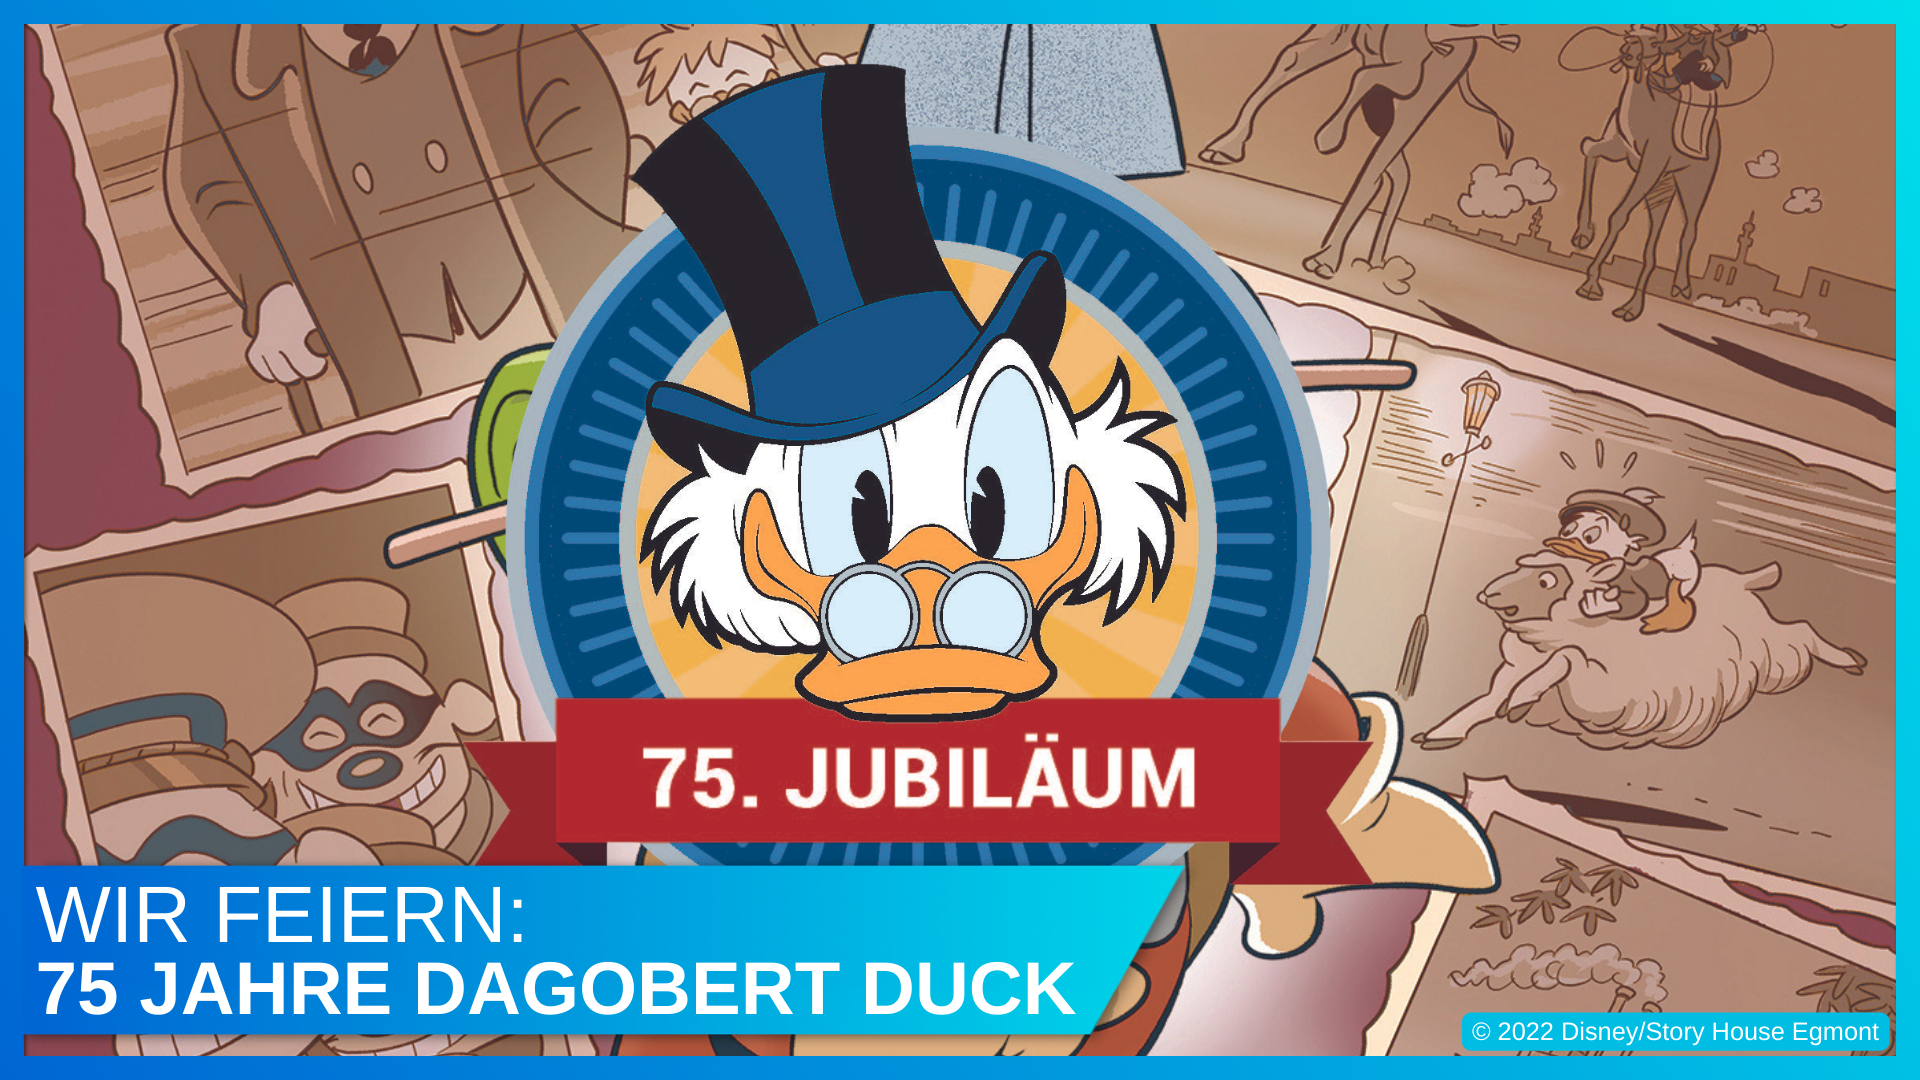 75 Jahre Dagobert Duck: Alles über die Geschichte und das Jubiläum der reichsten Ente der Welt